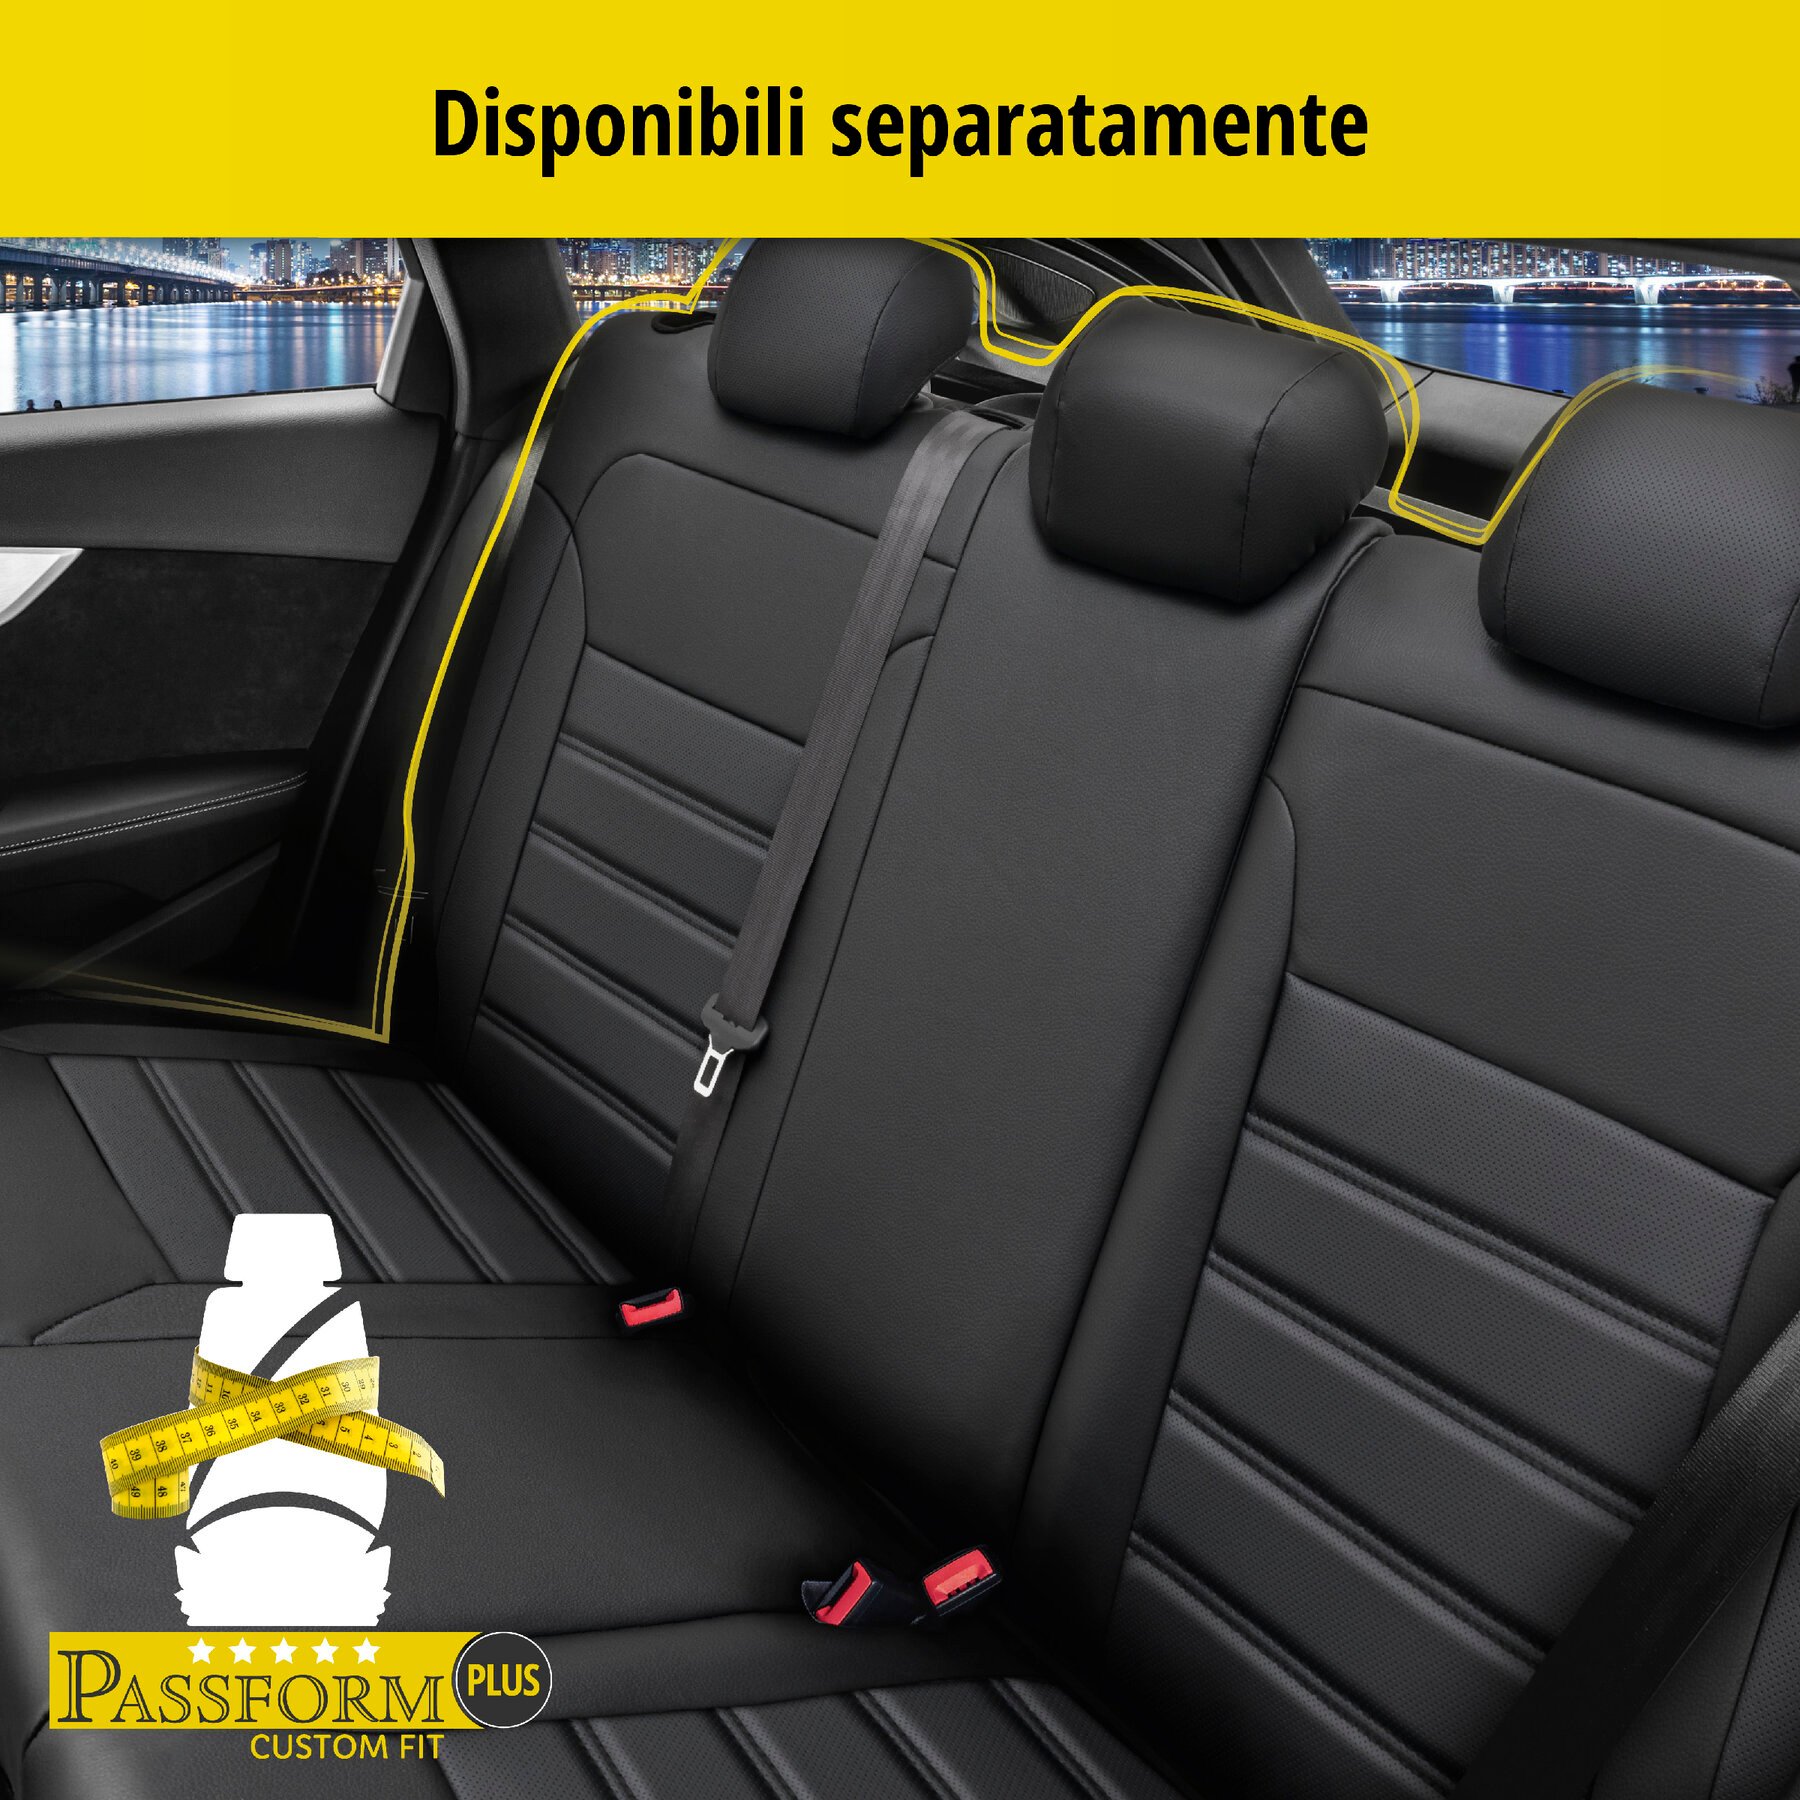 Coprisedili Robusto per Fiat 500L 09/2012-Oggi, 2 coprisedili singoli per sedili normali